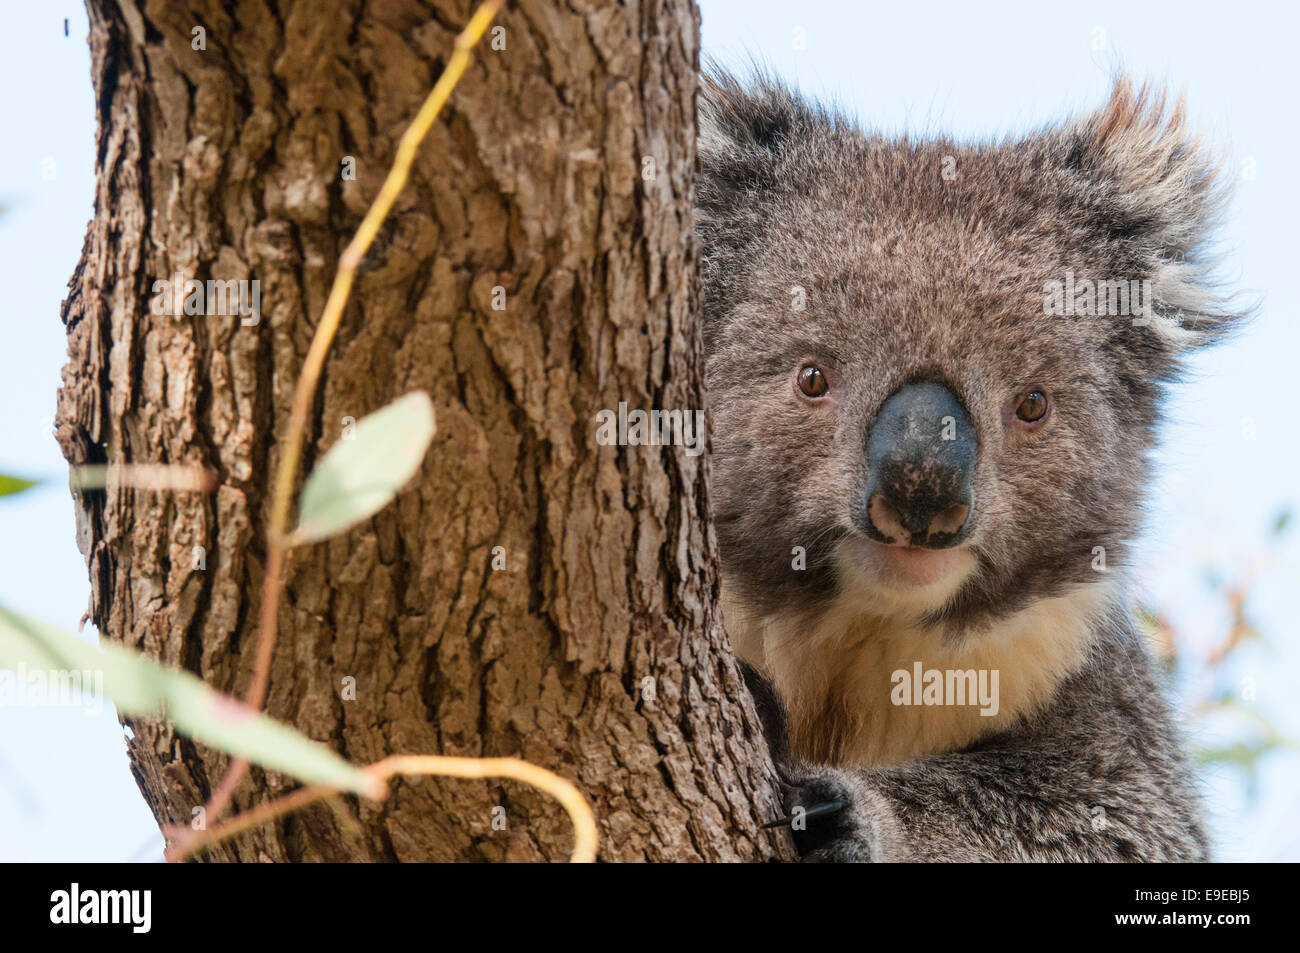 Stock Foto von einem Koala peering hinter einem Baum Stockfoto